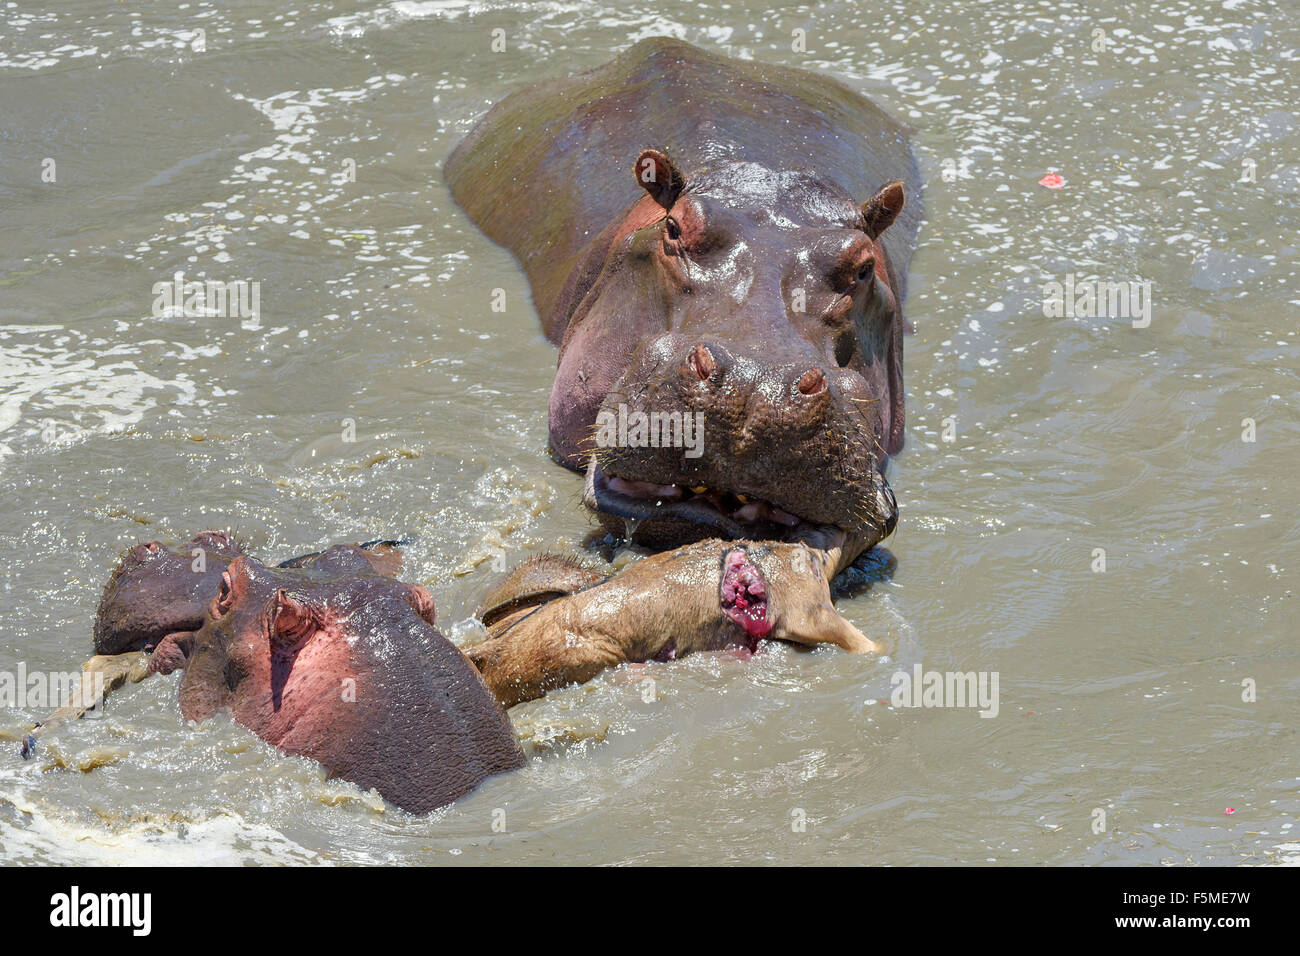 Los hipopótamos (Hippopotamus amphibious) caza y muerte de los ñus (Connochaetes roperinus) pantorrilla, comportamiento inusual Foto de stock